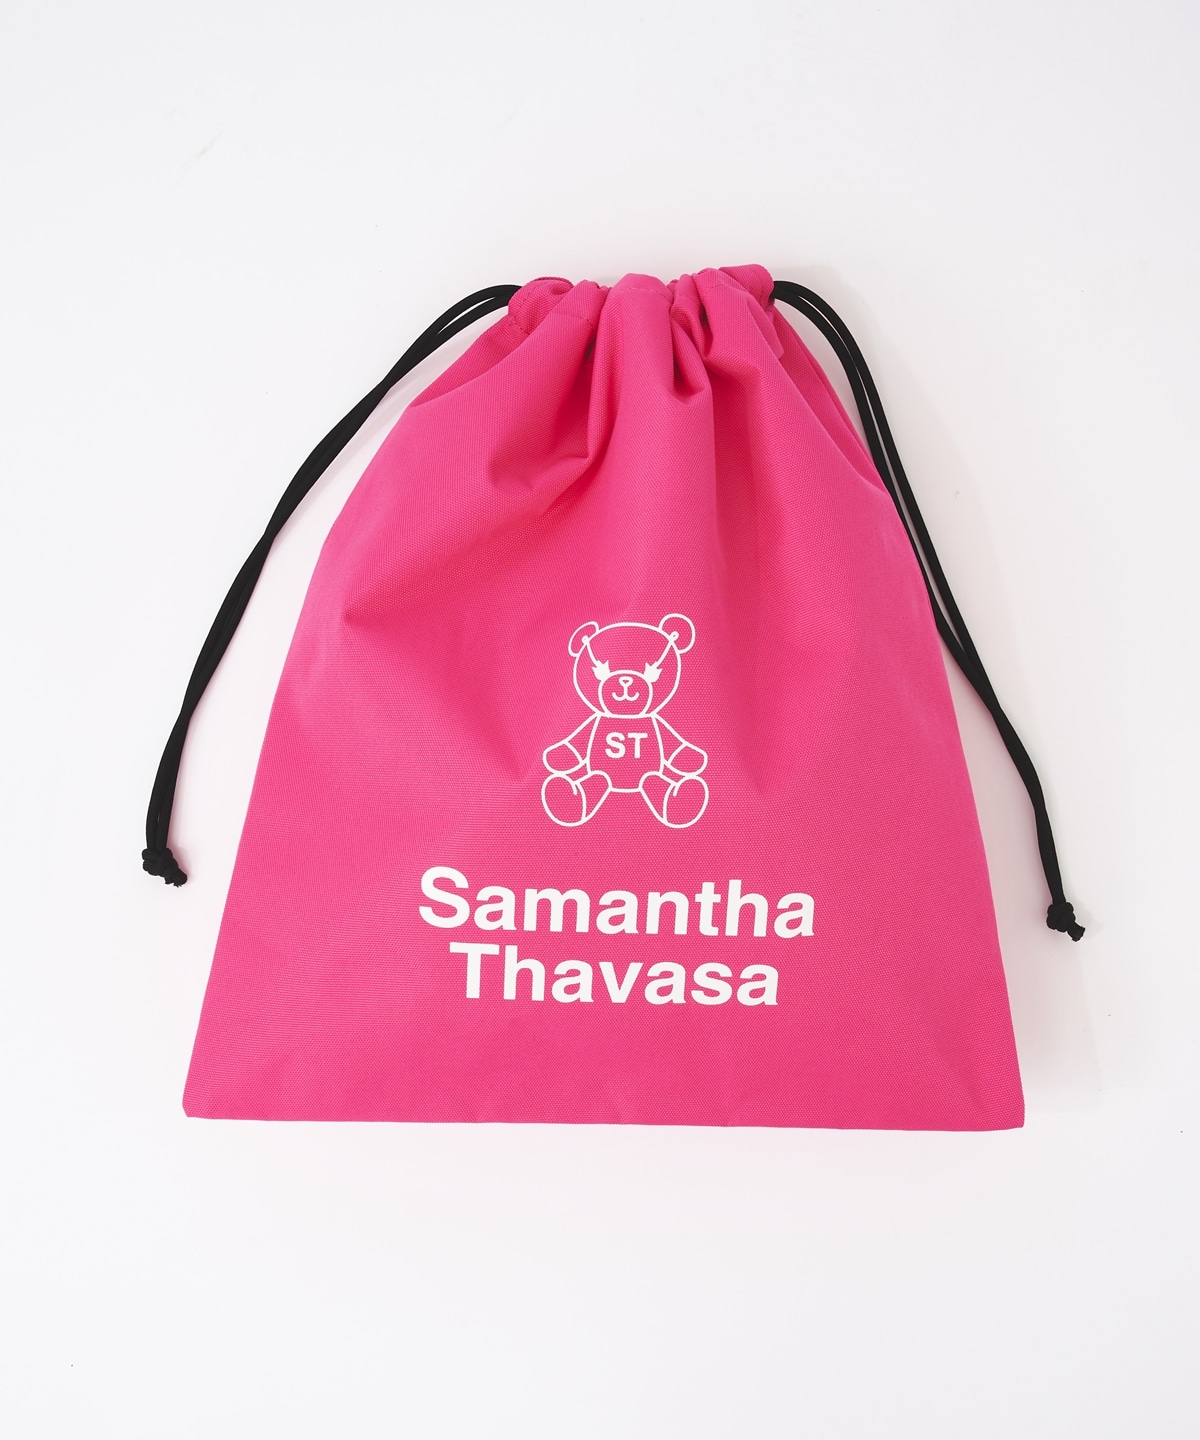 アイミートラベルカバー(S ネイビー): Samantha Thavasa UNDER25 & NO 